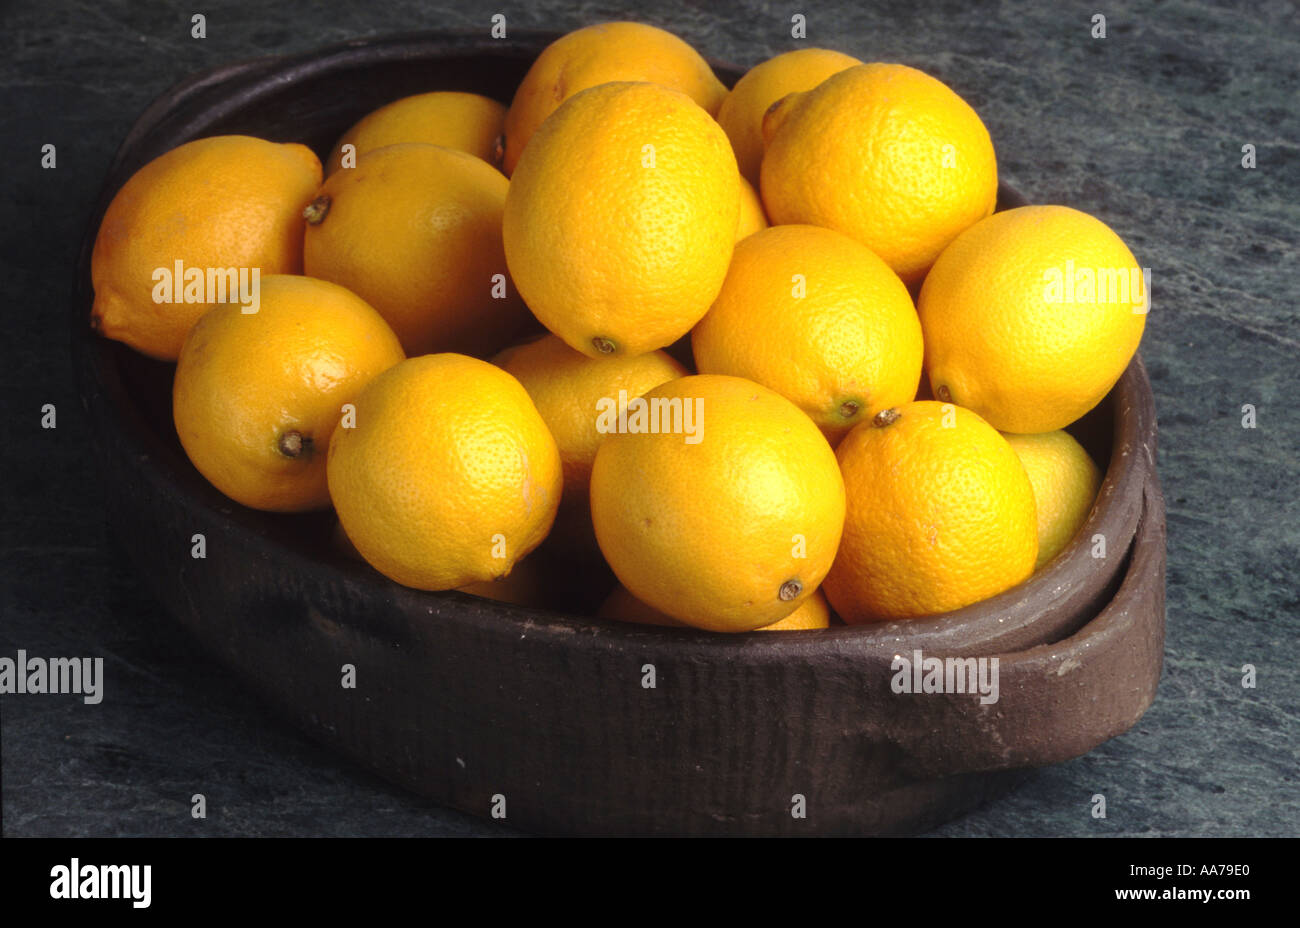 Les fruits d'agrumes citrons citron jaune alimentaire acide sulfureux zitrone zitronen Banque D'Images